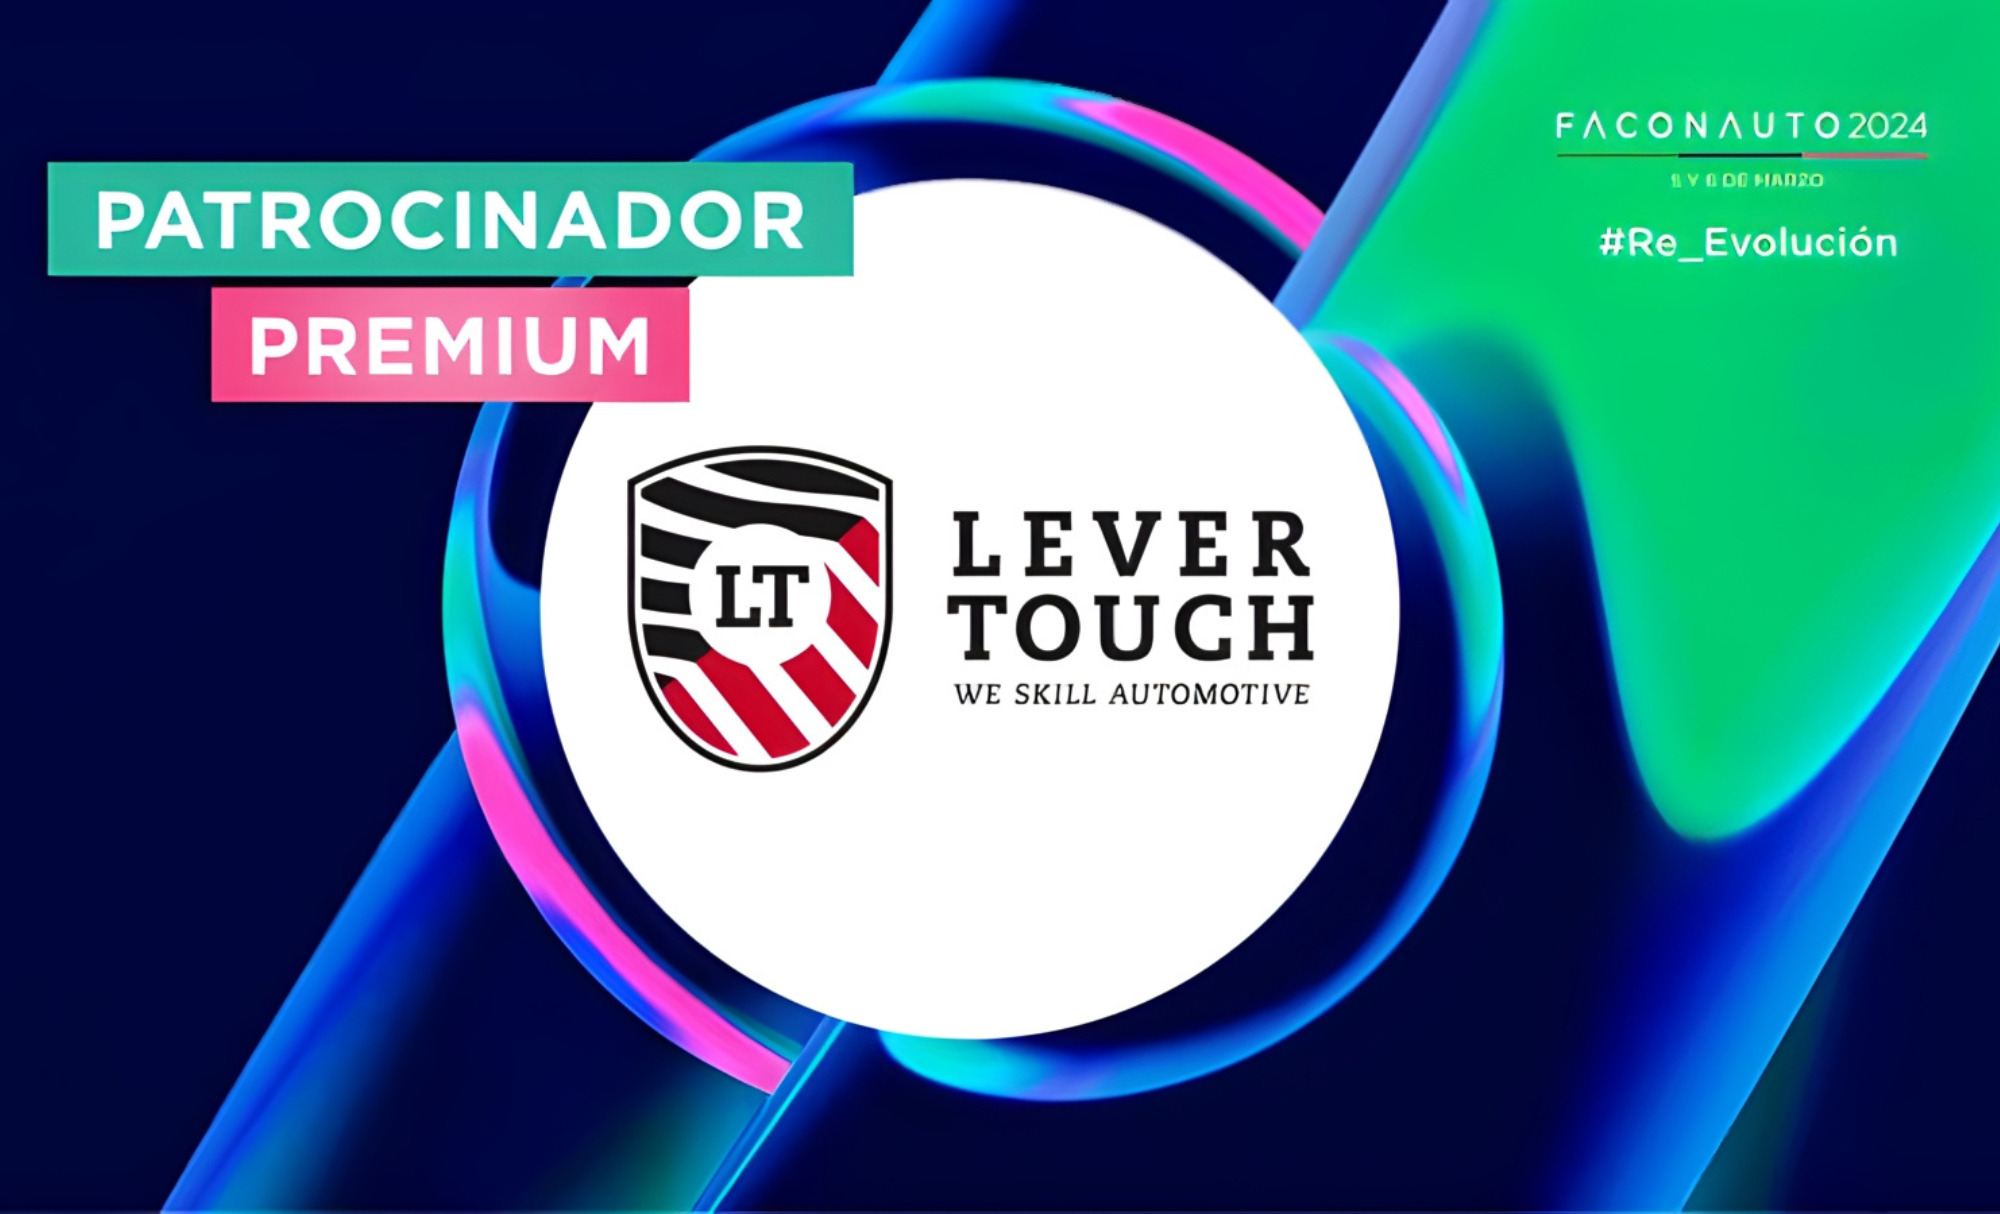 Lever Touch, sponsor premium di Faconauto 2024: "Offriamo ai concessionari la copertura giusta per intervenire tempestivamente, con misure di qualità e garanzia nei sinistri climatici dei propri clienti."